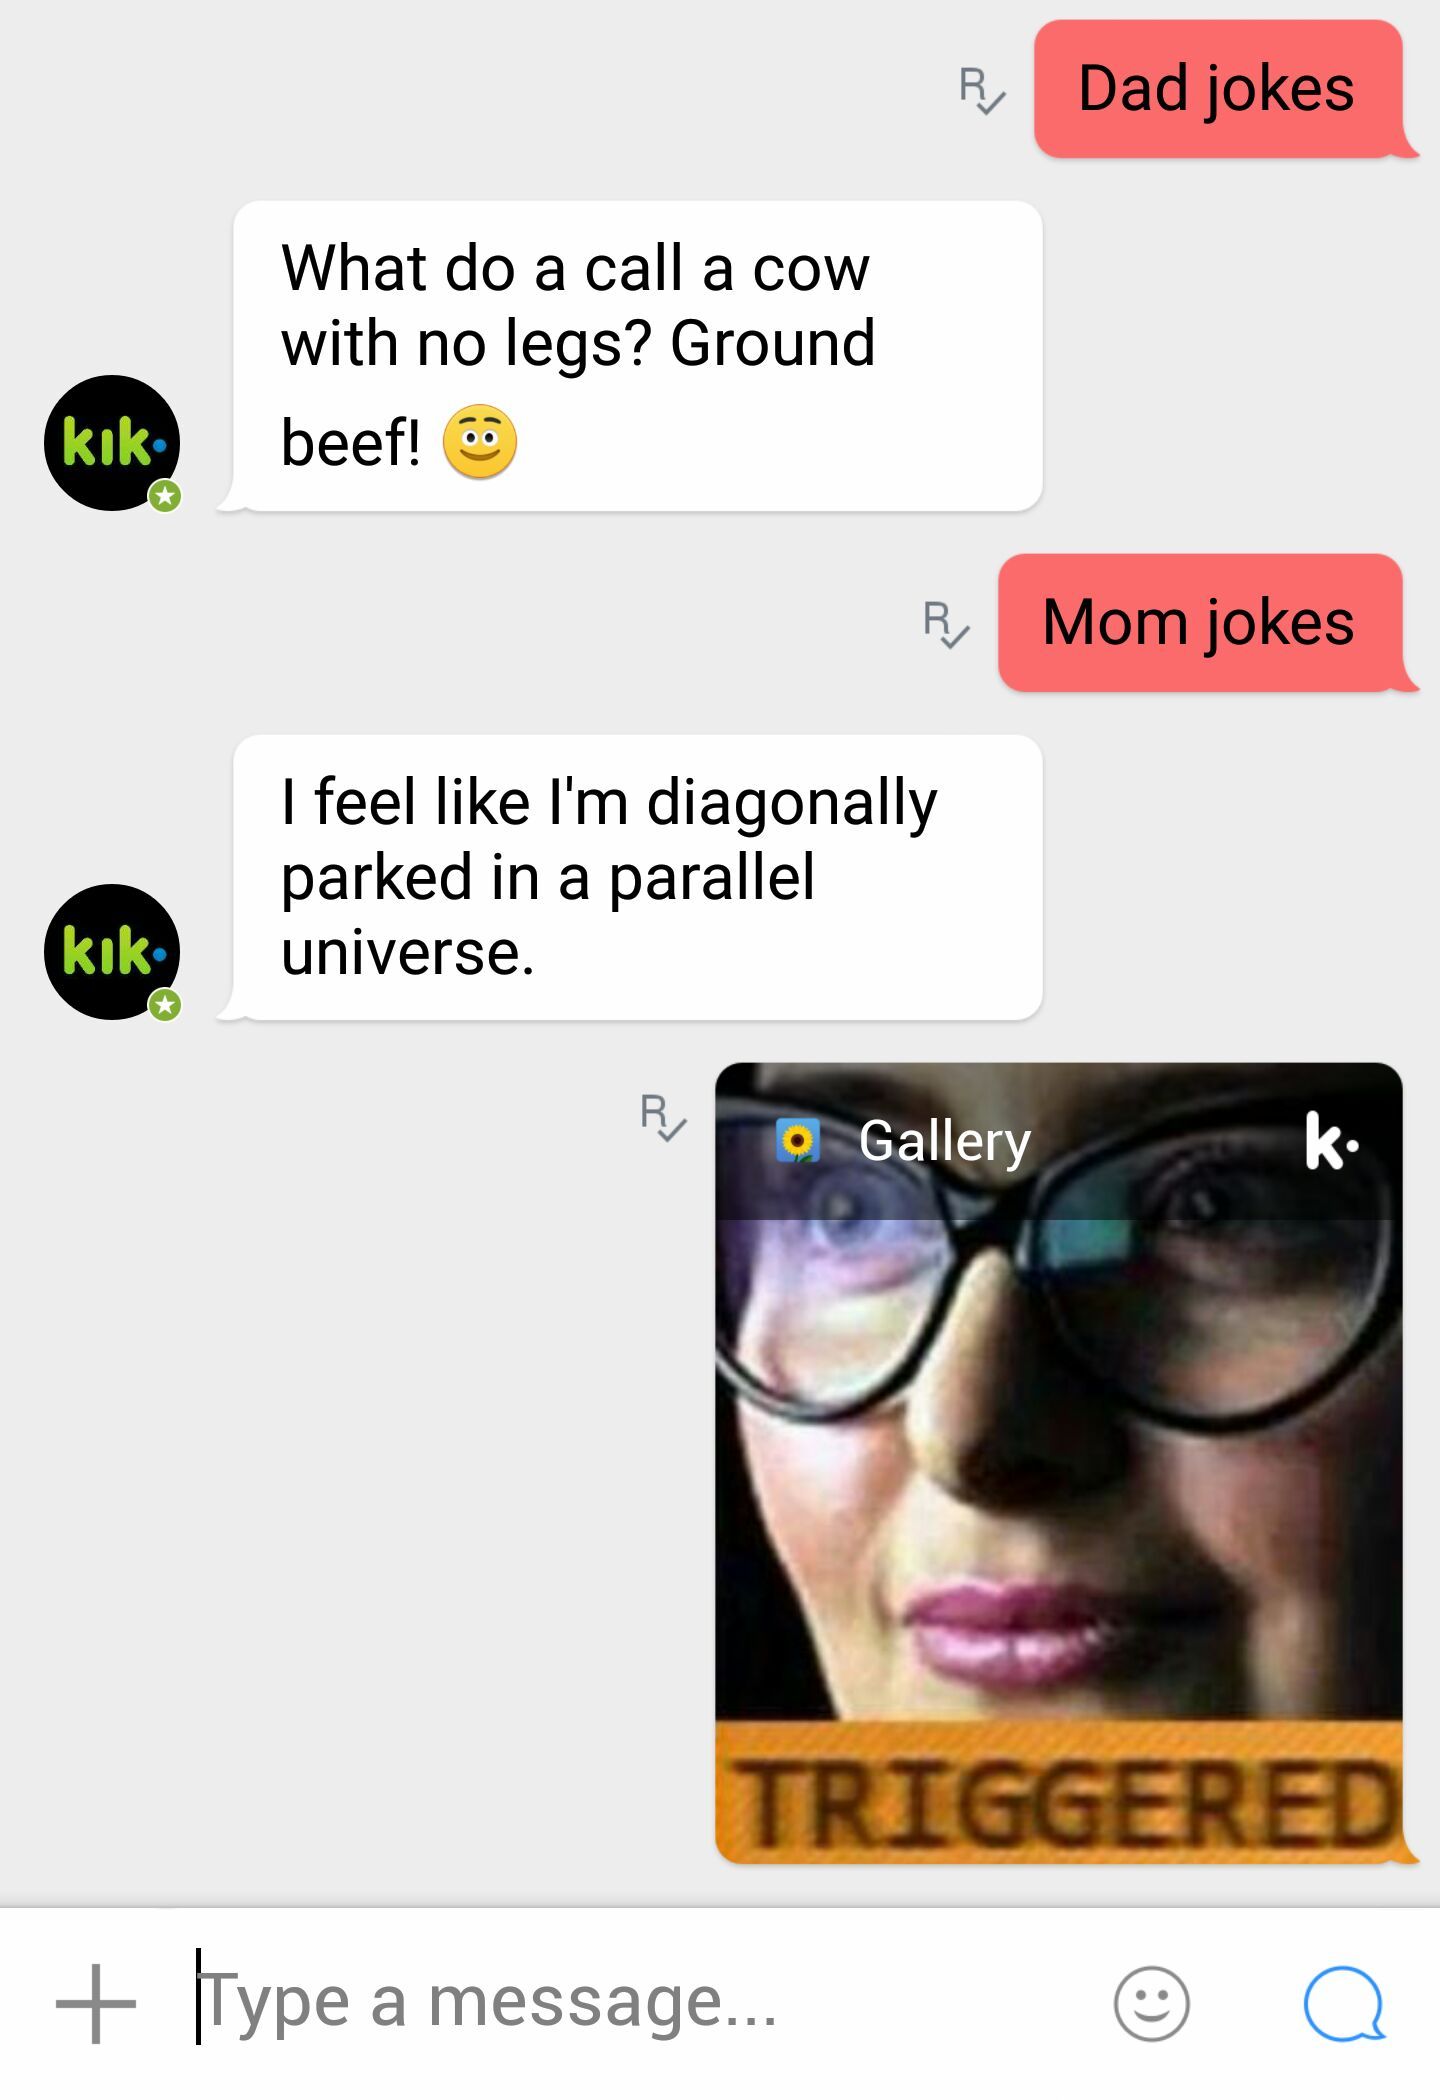 Kikteam is not fond of moms. - meme